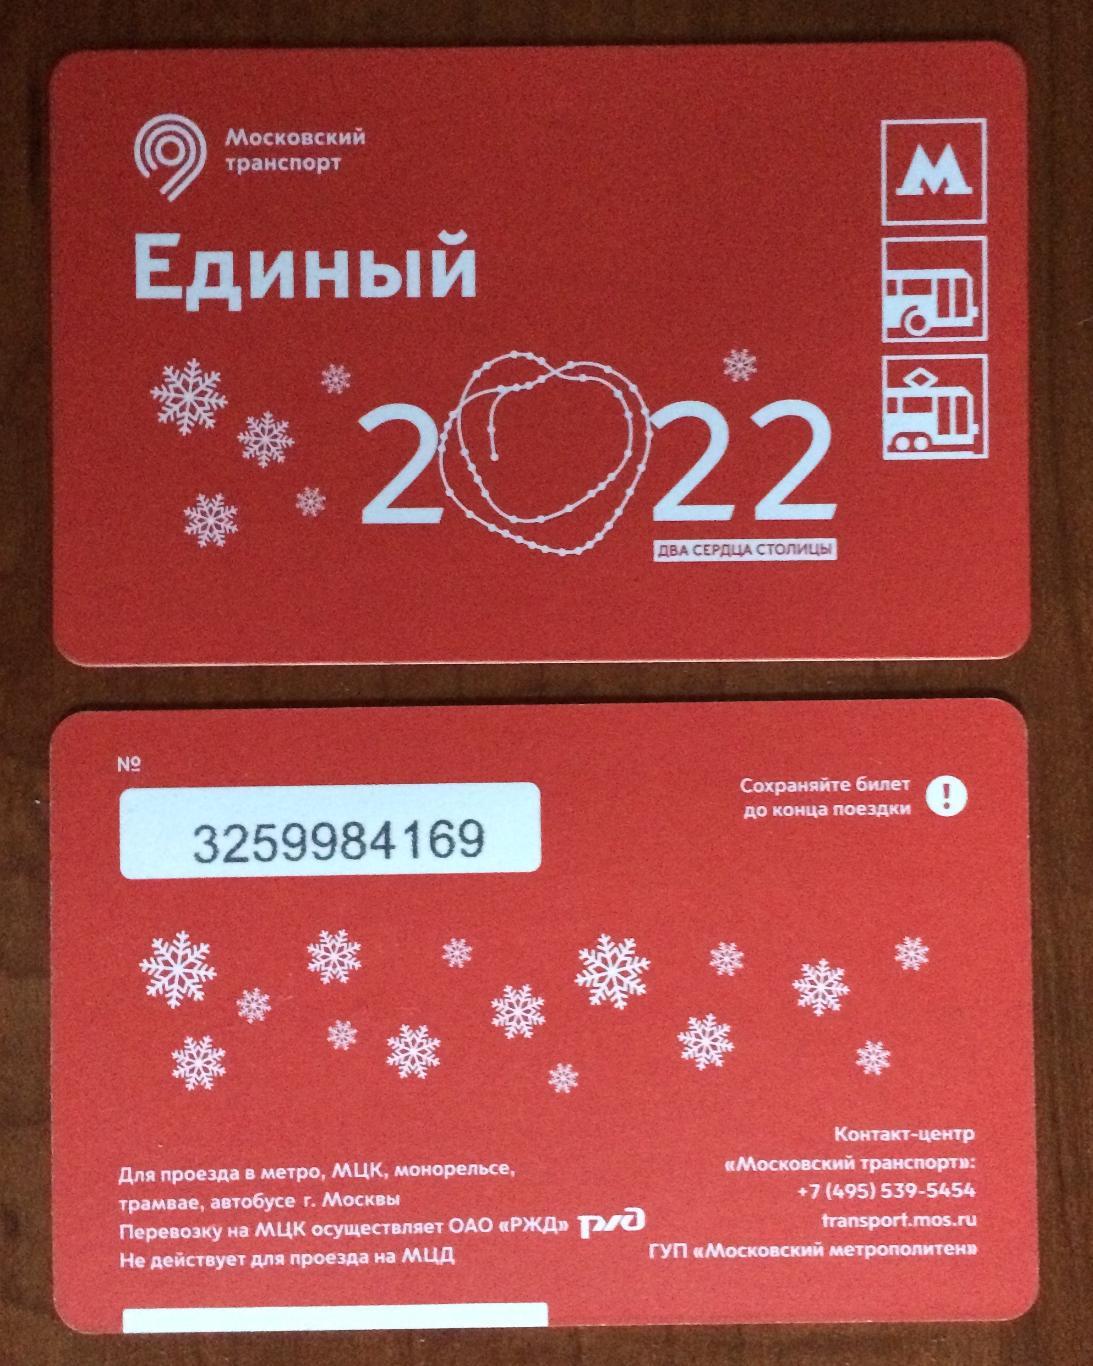 Билет Метро Единый 2022 Два сердца столицы 2021 год